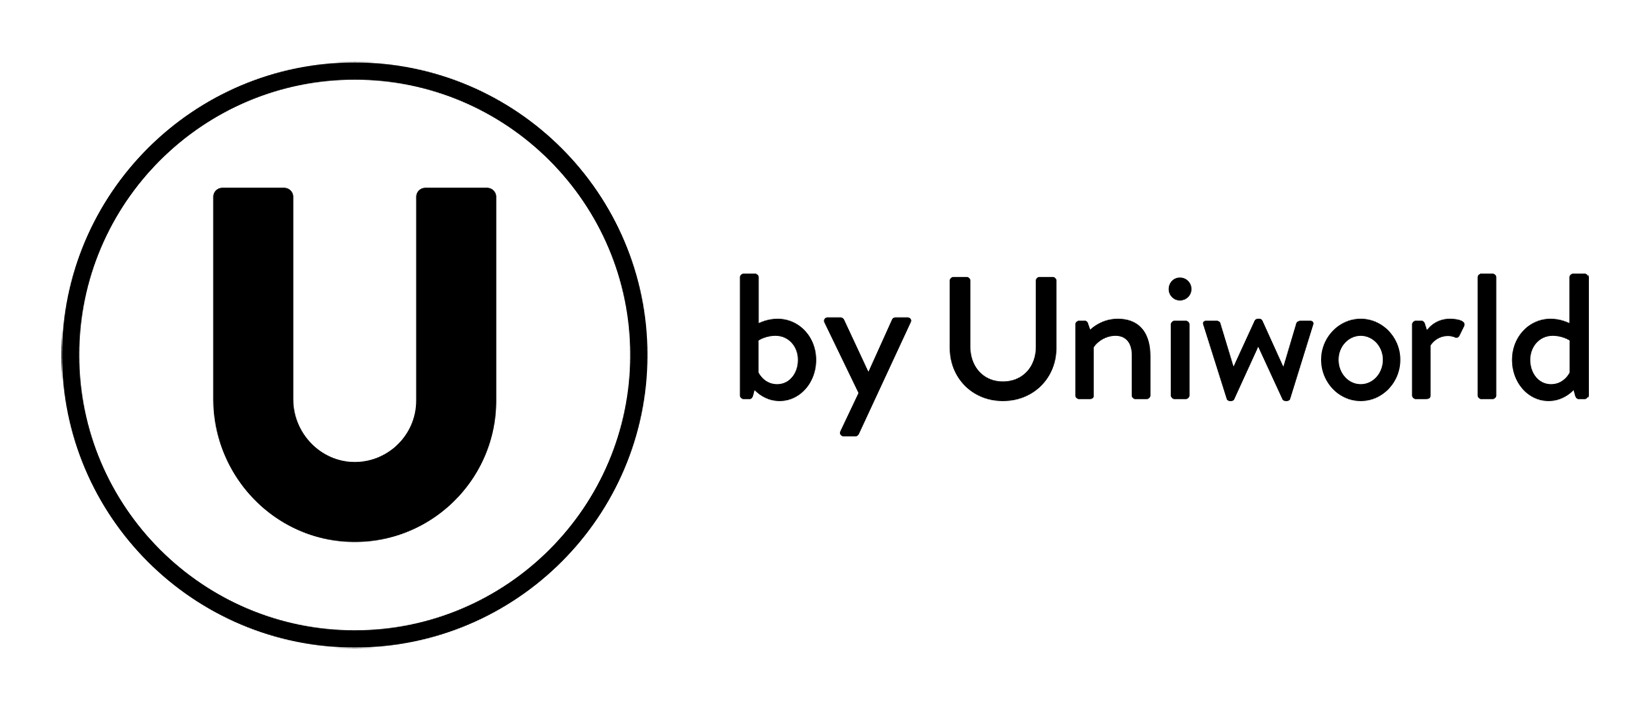 U by Uniworld logo (horizontal, transparent background)